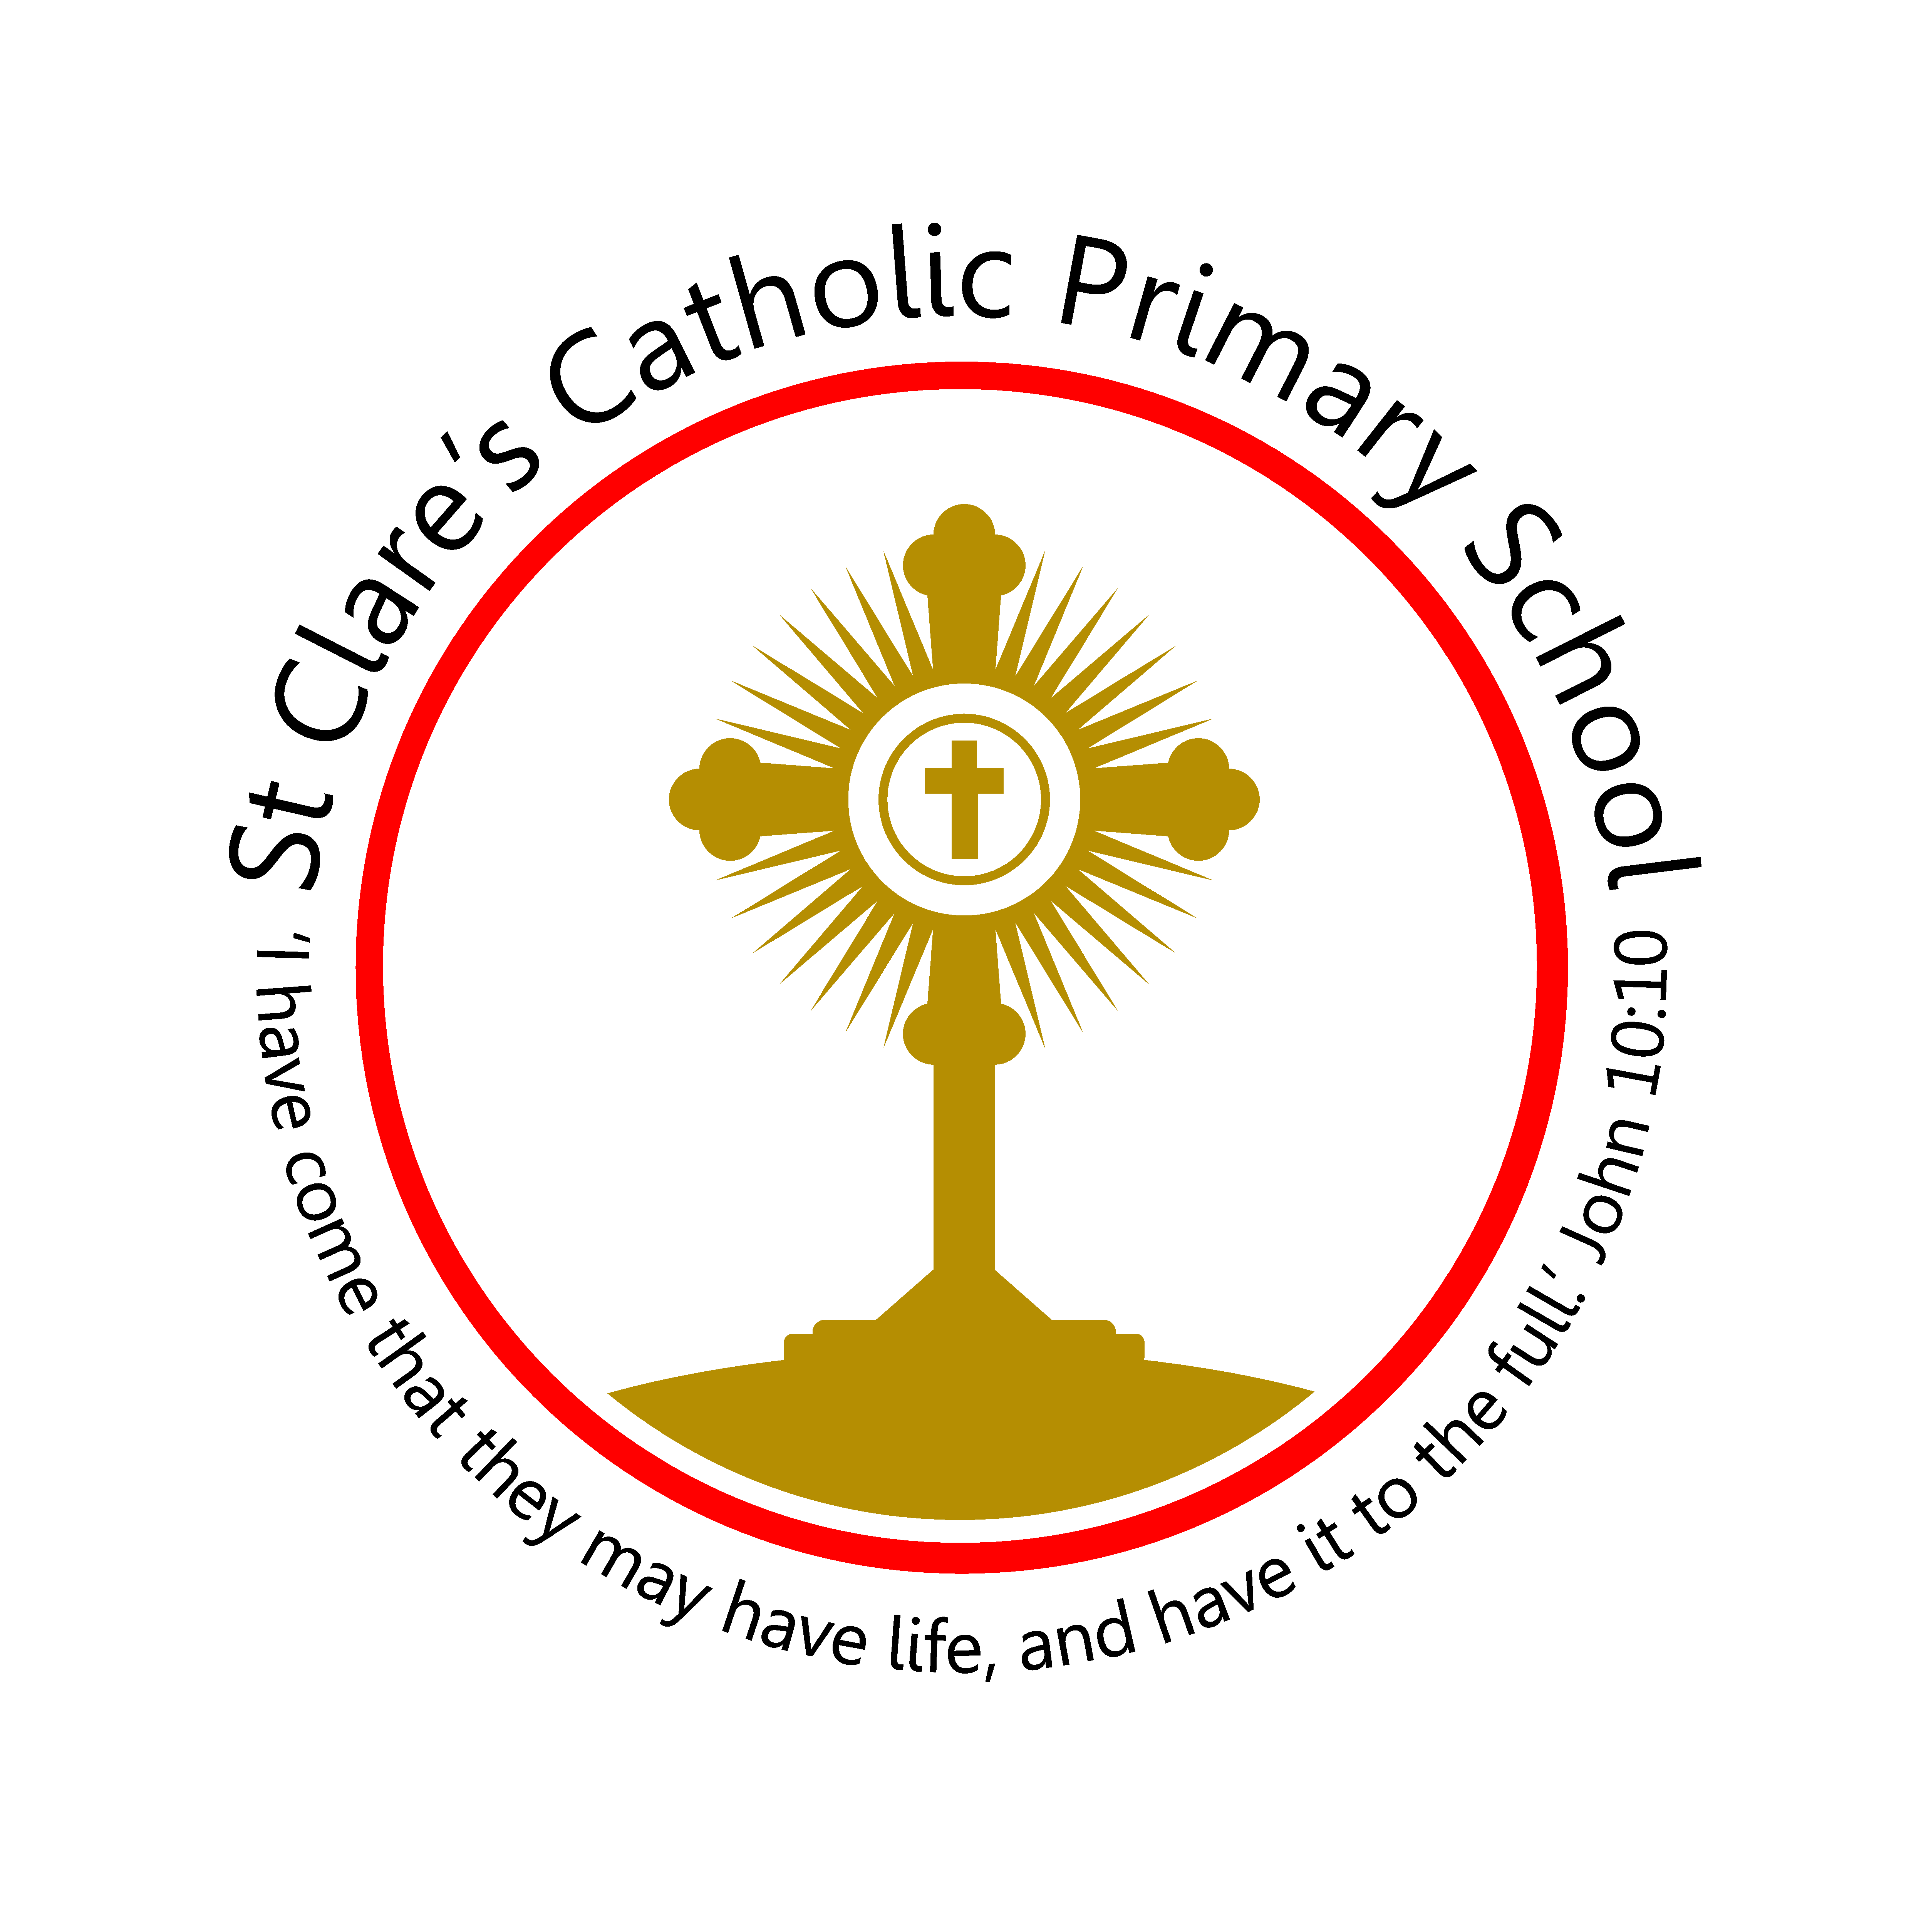 St. Clare's Catholic Primary School logo